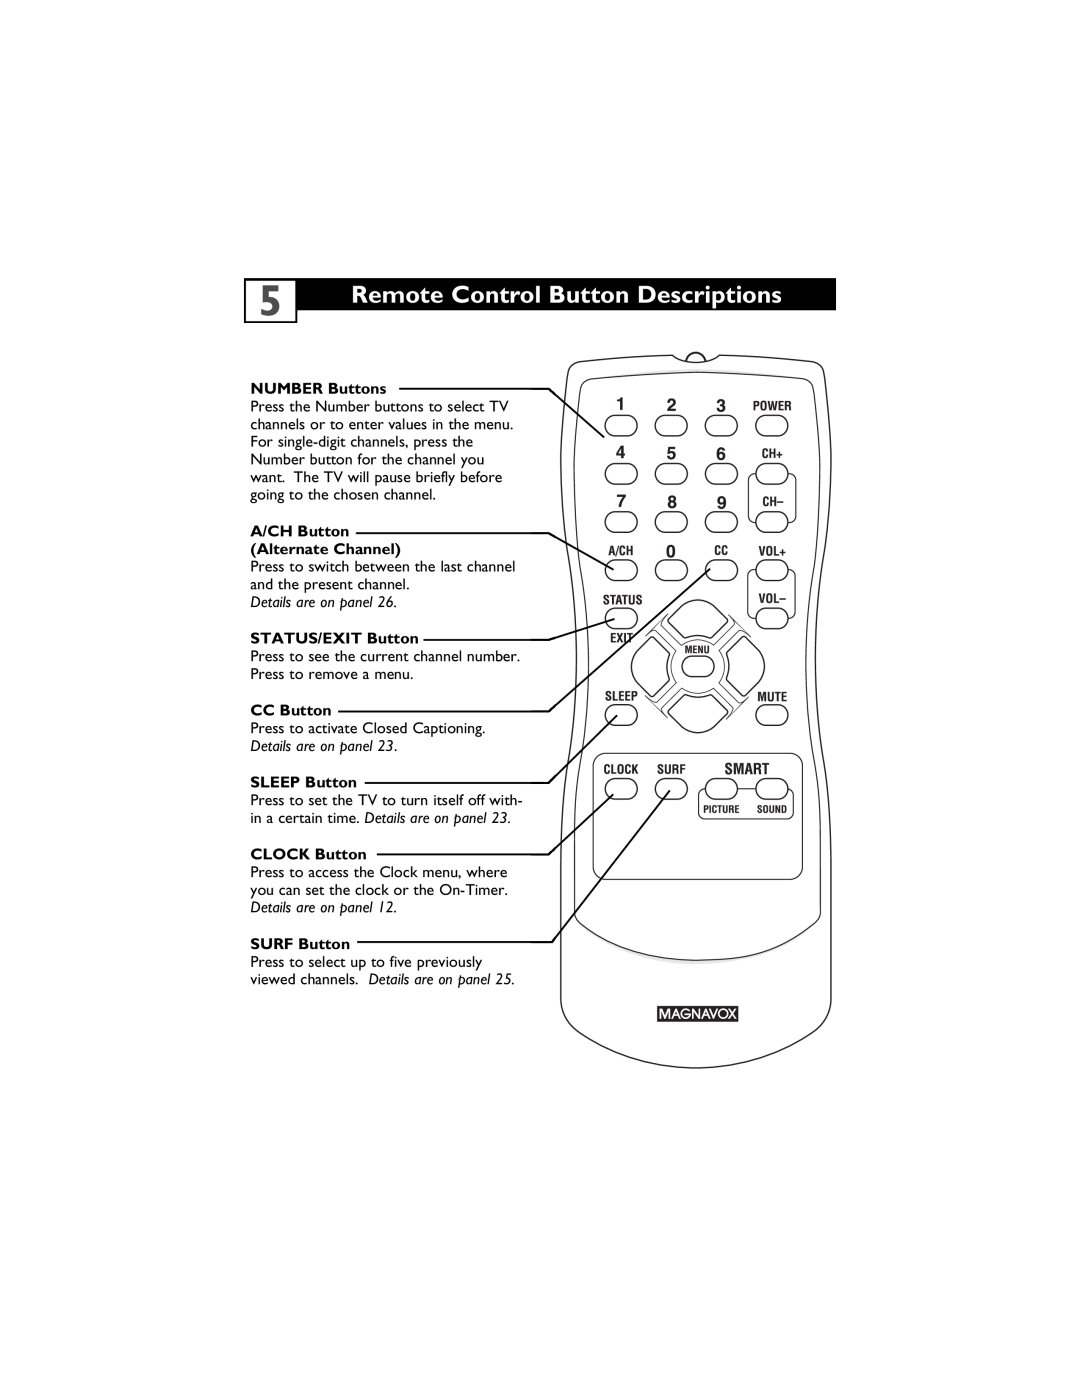 Magnavox 13MT1432/17, 13MT1433/17 Remote Control Button Descriptions, NUMBER Buttons, A/CH Button Alternate Channel 